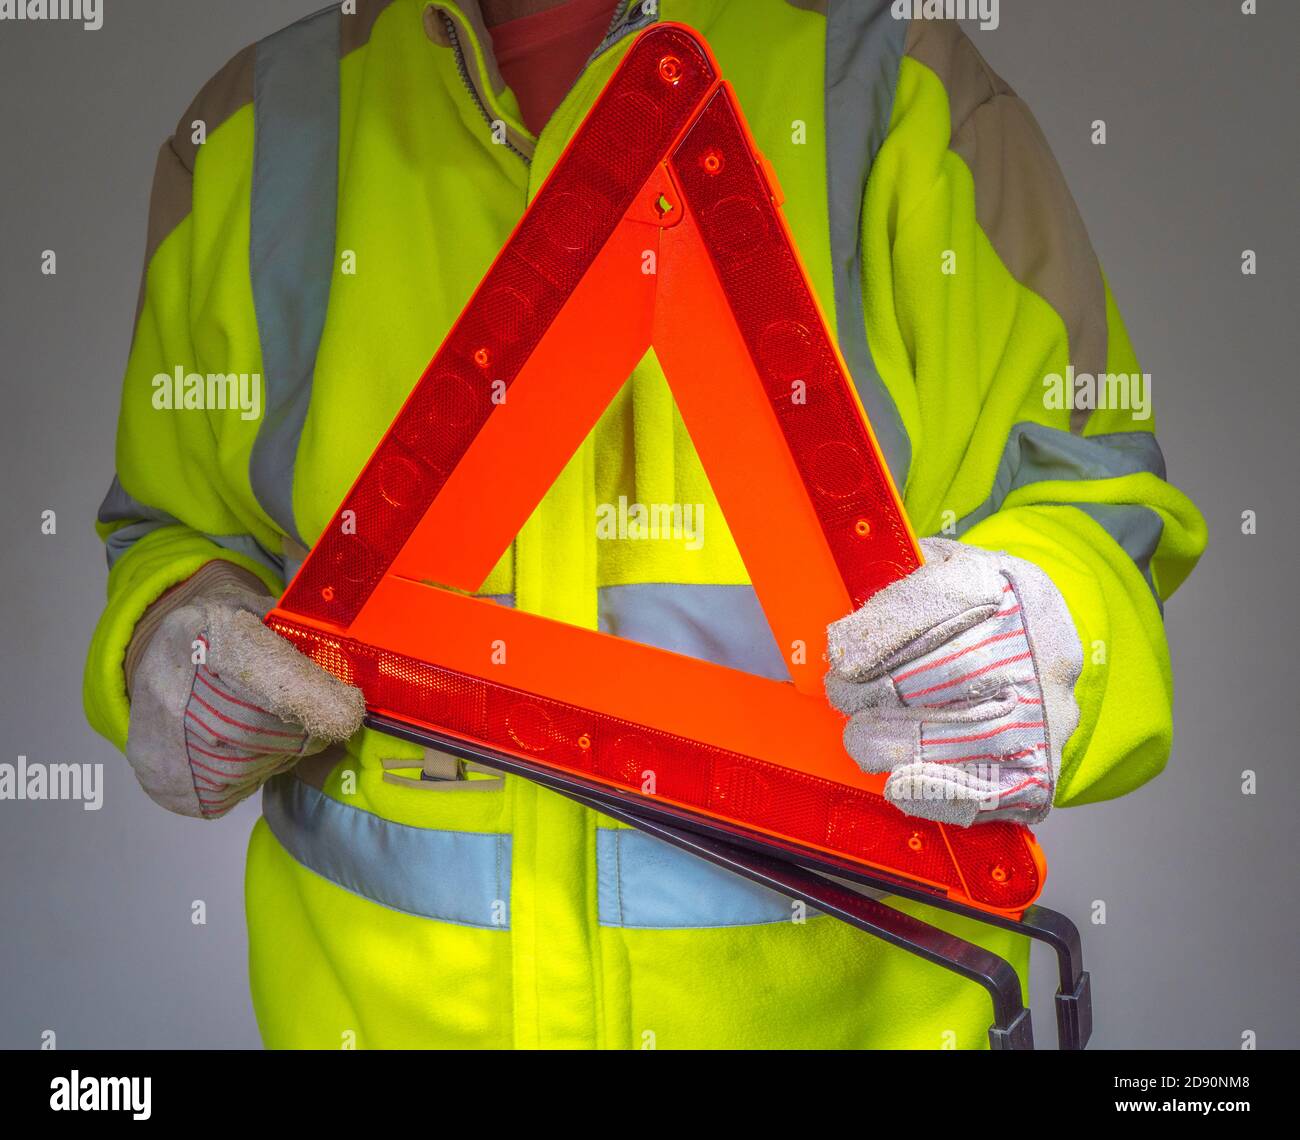 Guardaroba di un uomo che indossa guanti e giacca di sicurezza in pile giallo fluorescente ad alta visibilità, con un triangolo segnaletico arancione riflettente. Foto Stock